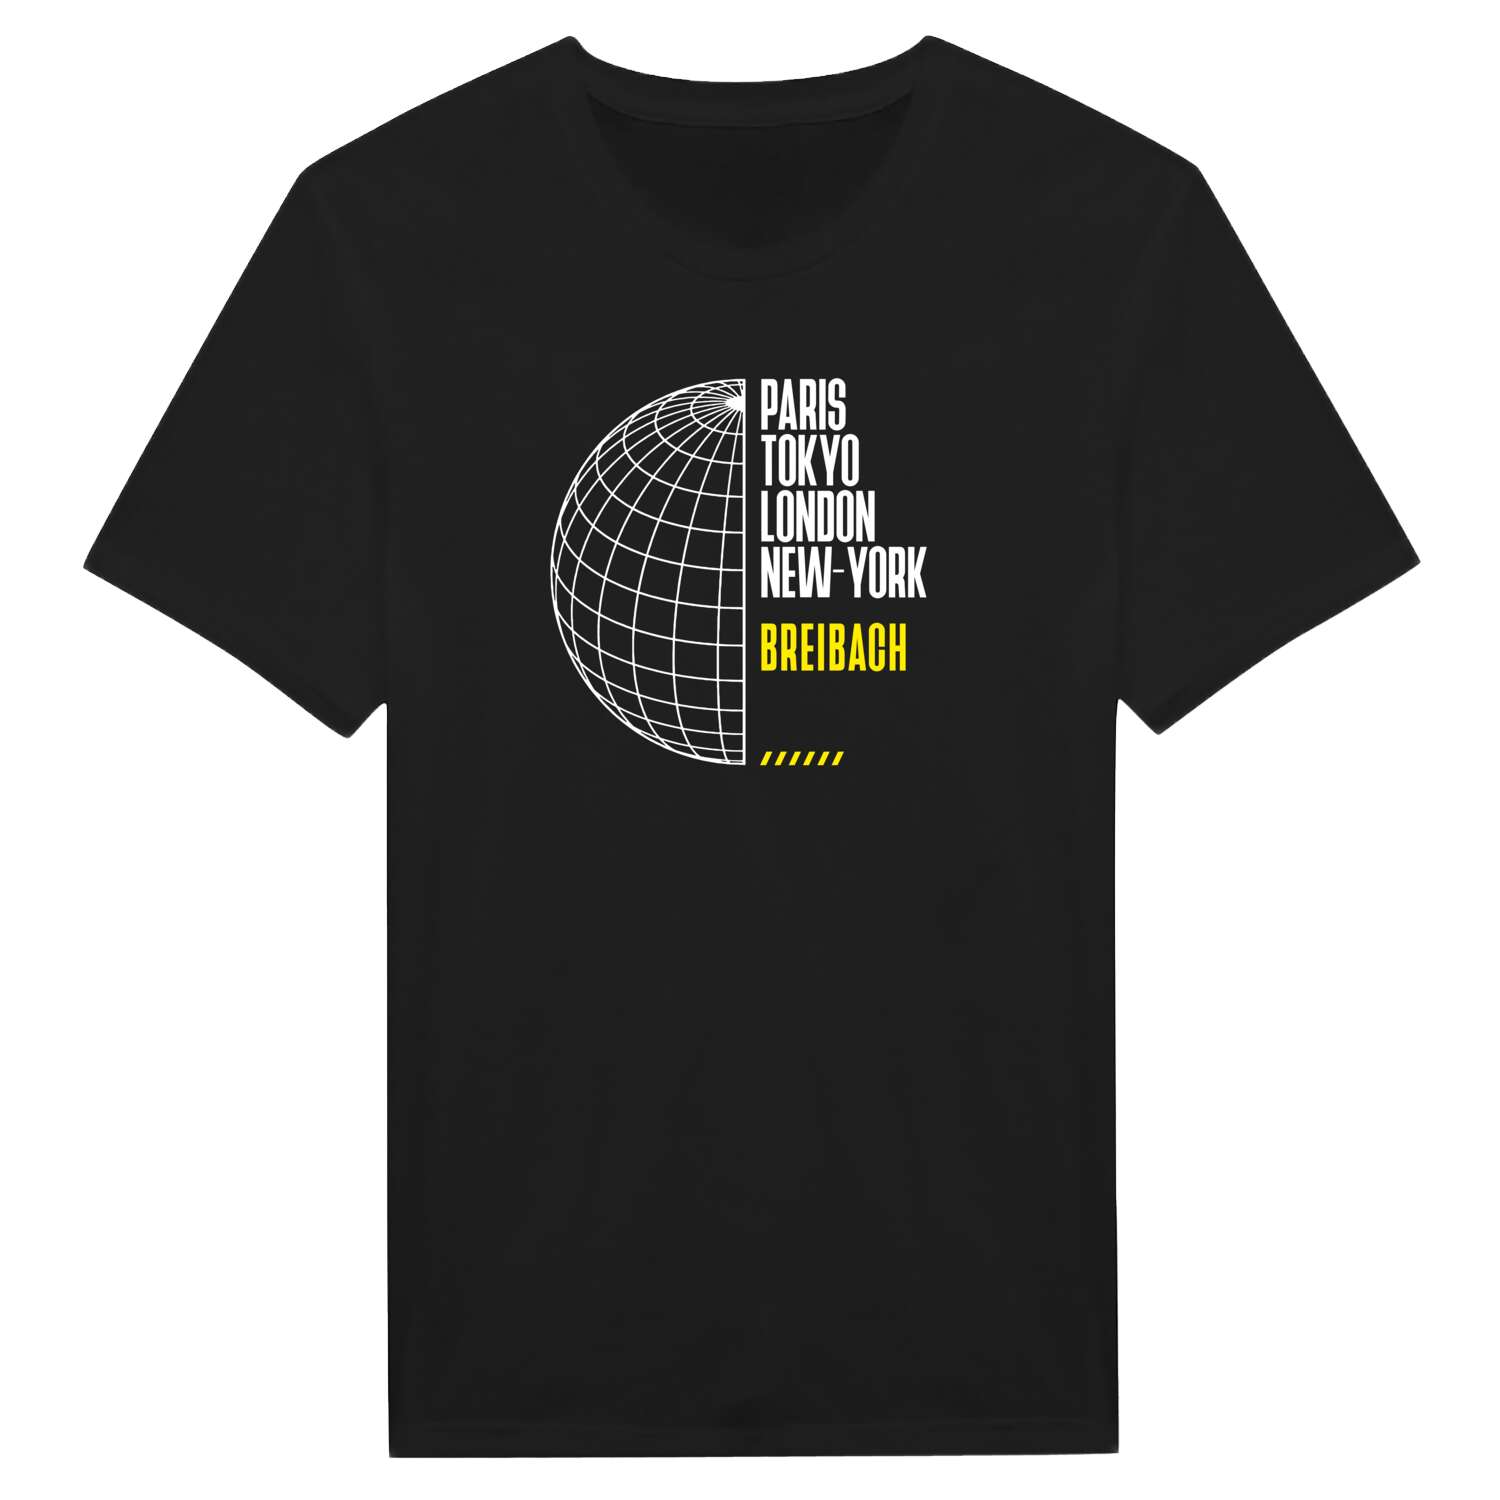 Breibach T-Shirt »Paris Tokyo London«